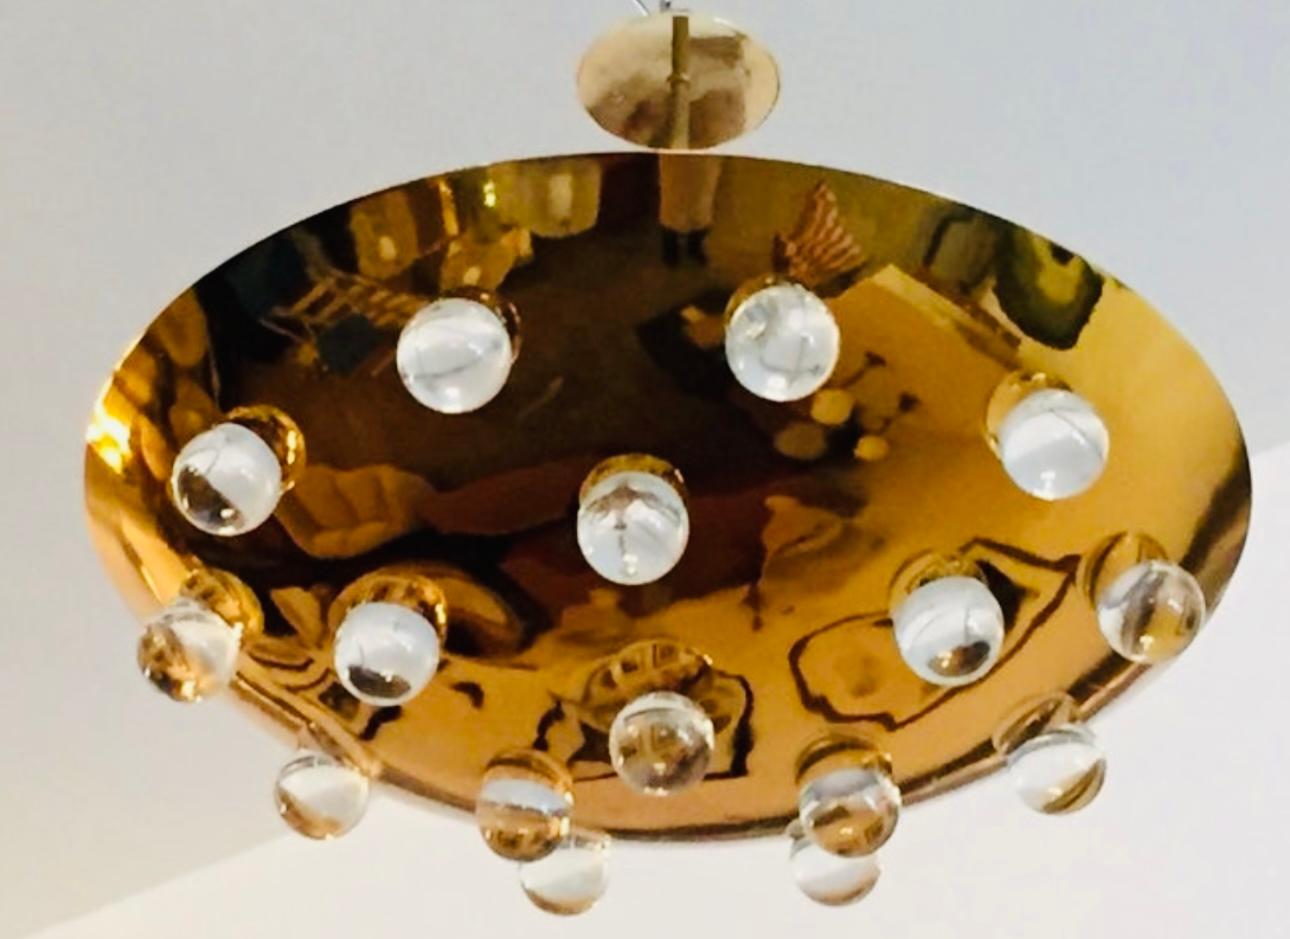 Un superbe luminaire à disque rond en laiton massif poli des années 1960, avec 16 orbes en verre massif. Sources de cinq lumières qui émettent de la lumière vers le bas à travers le verre ainsi que vers le haut en direction du plafond. Le poteau de